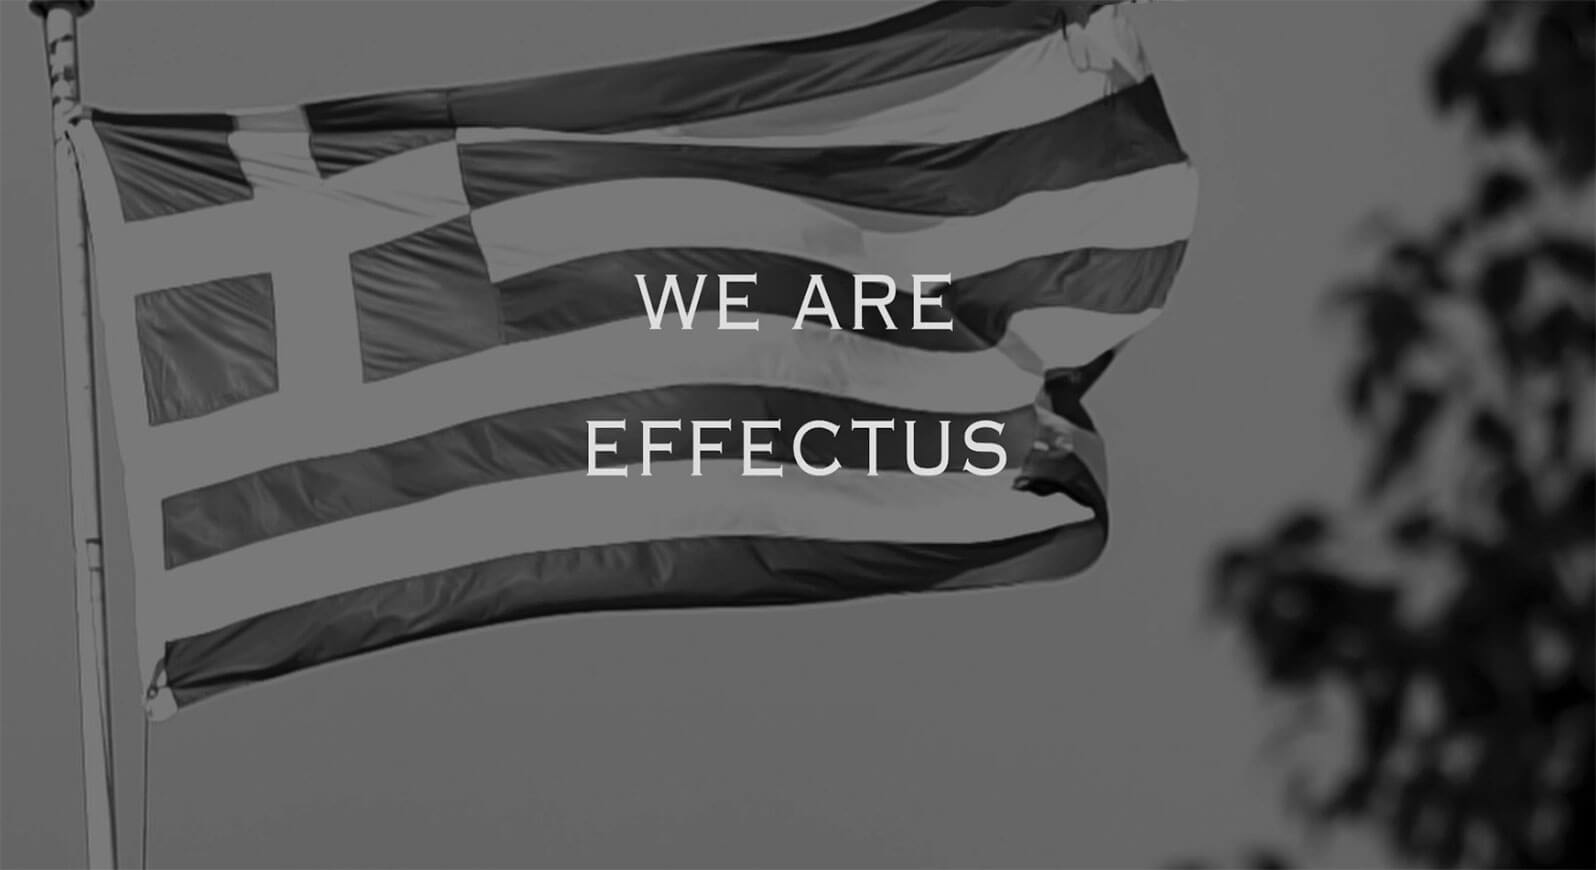 We are effectus